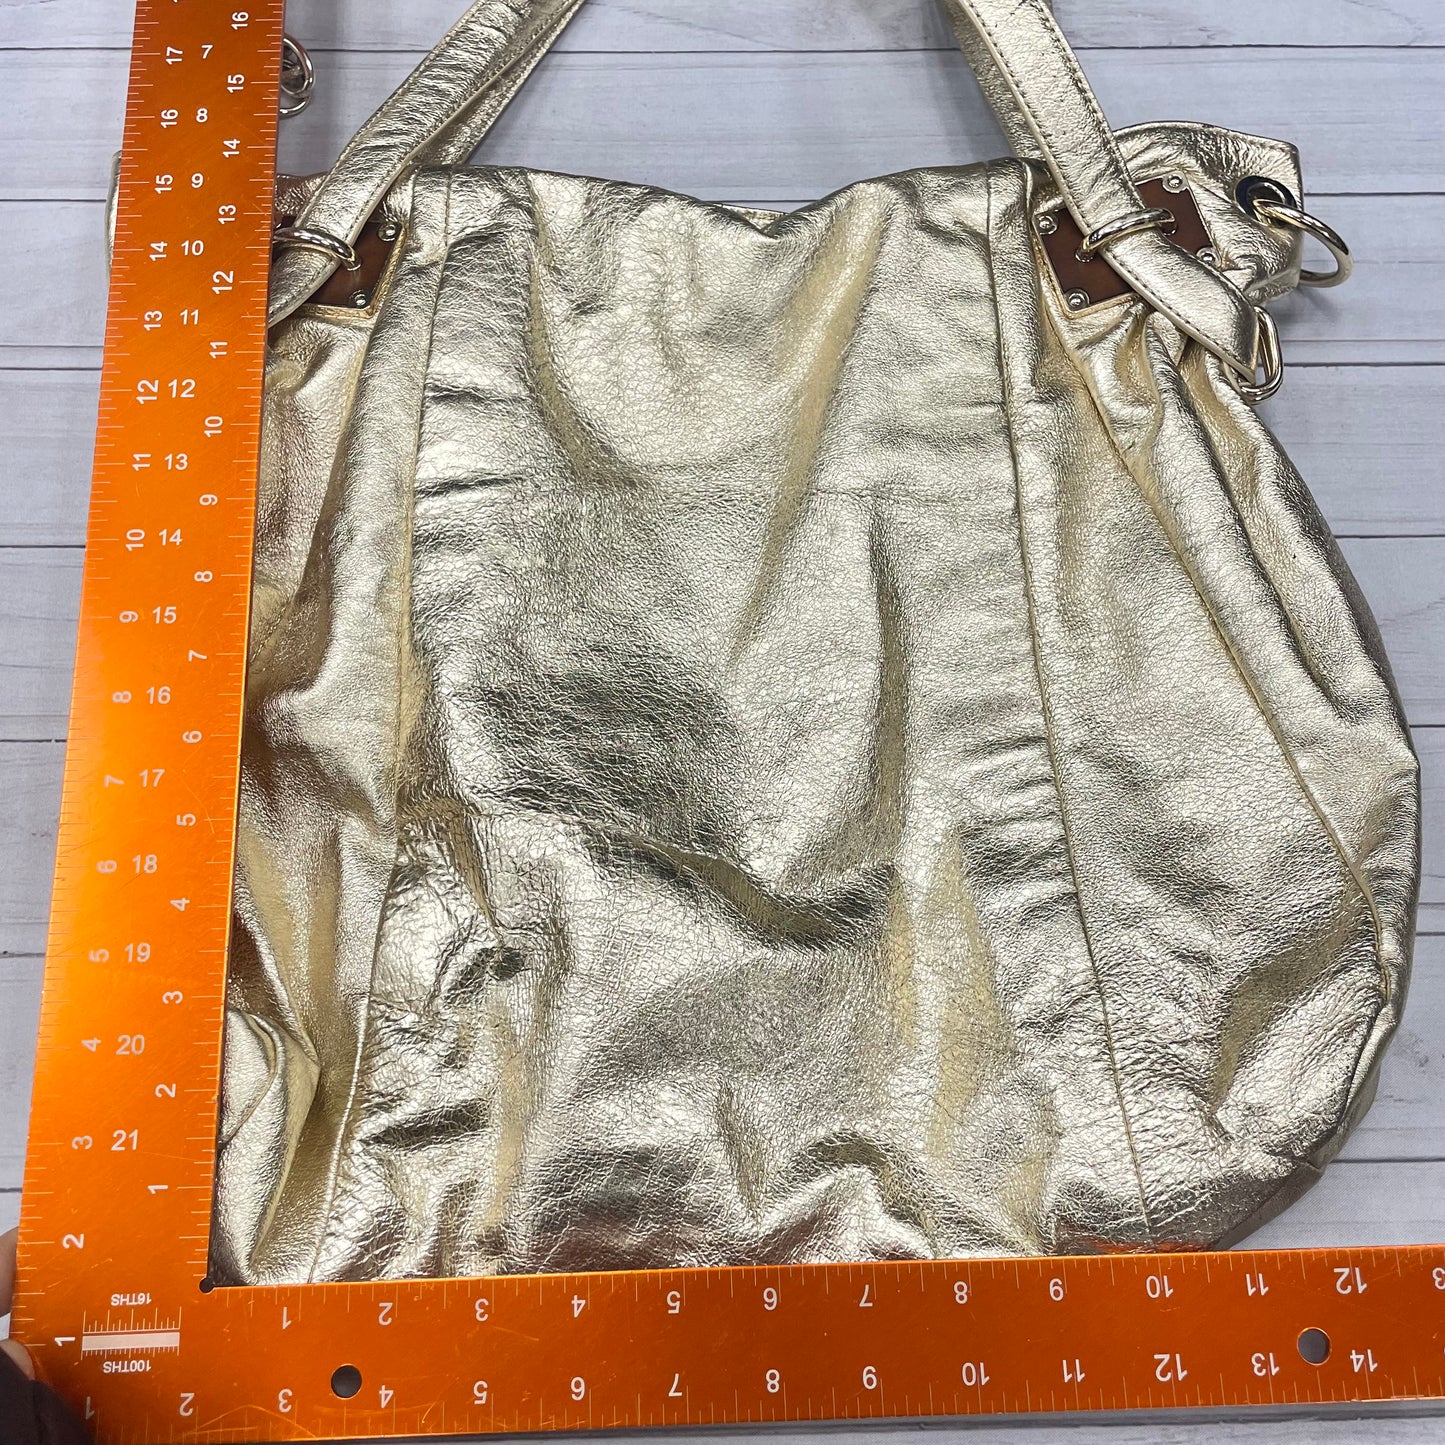 Handbag By Elliot Lucca  Size: Large